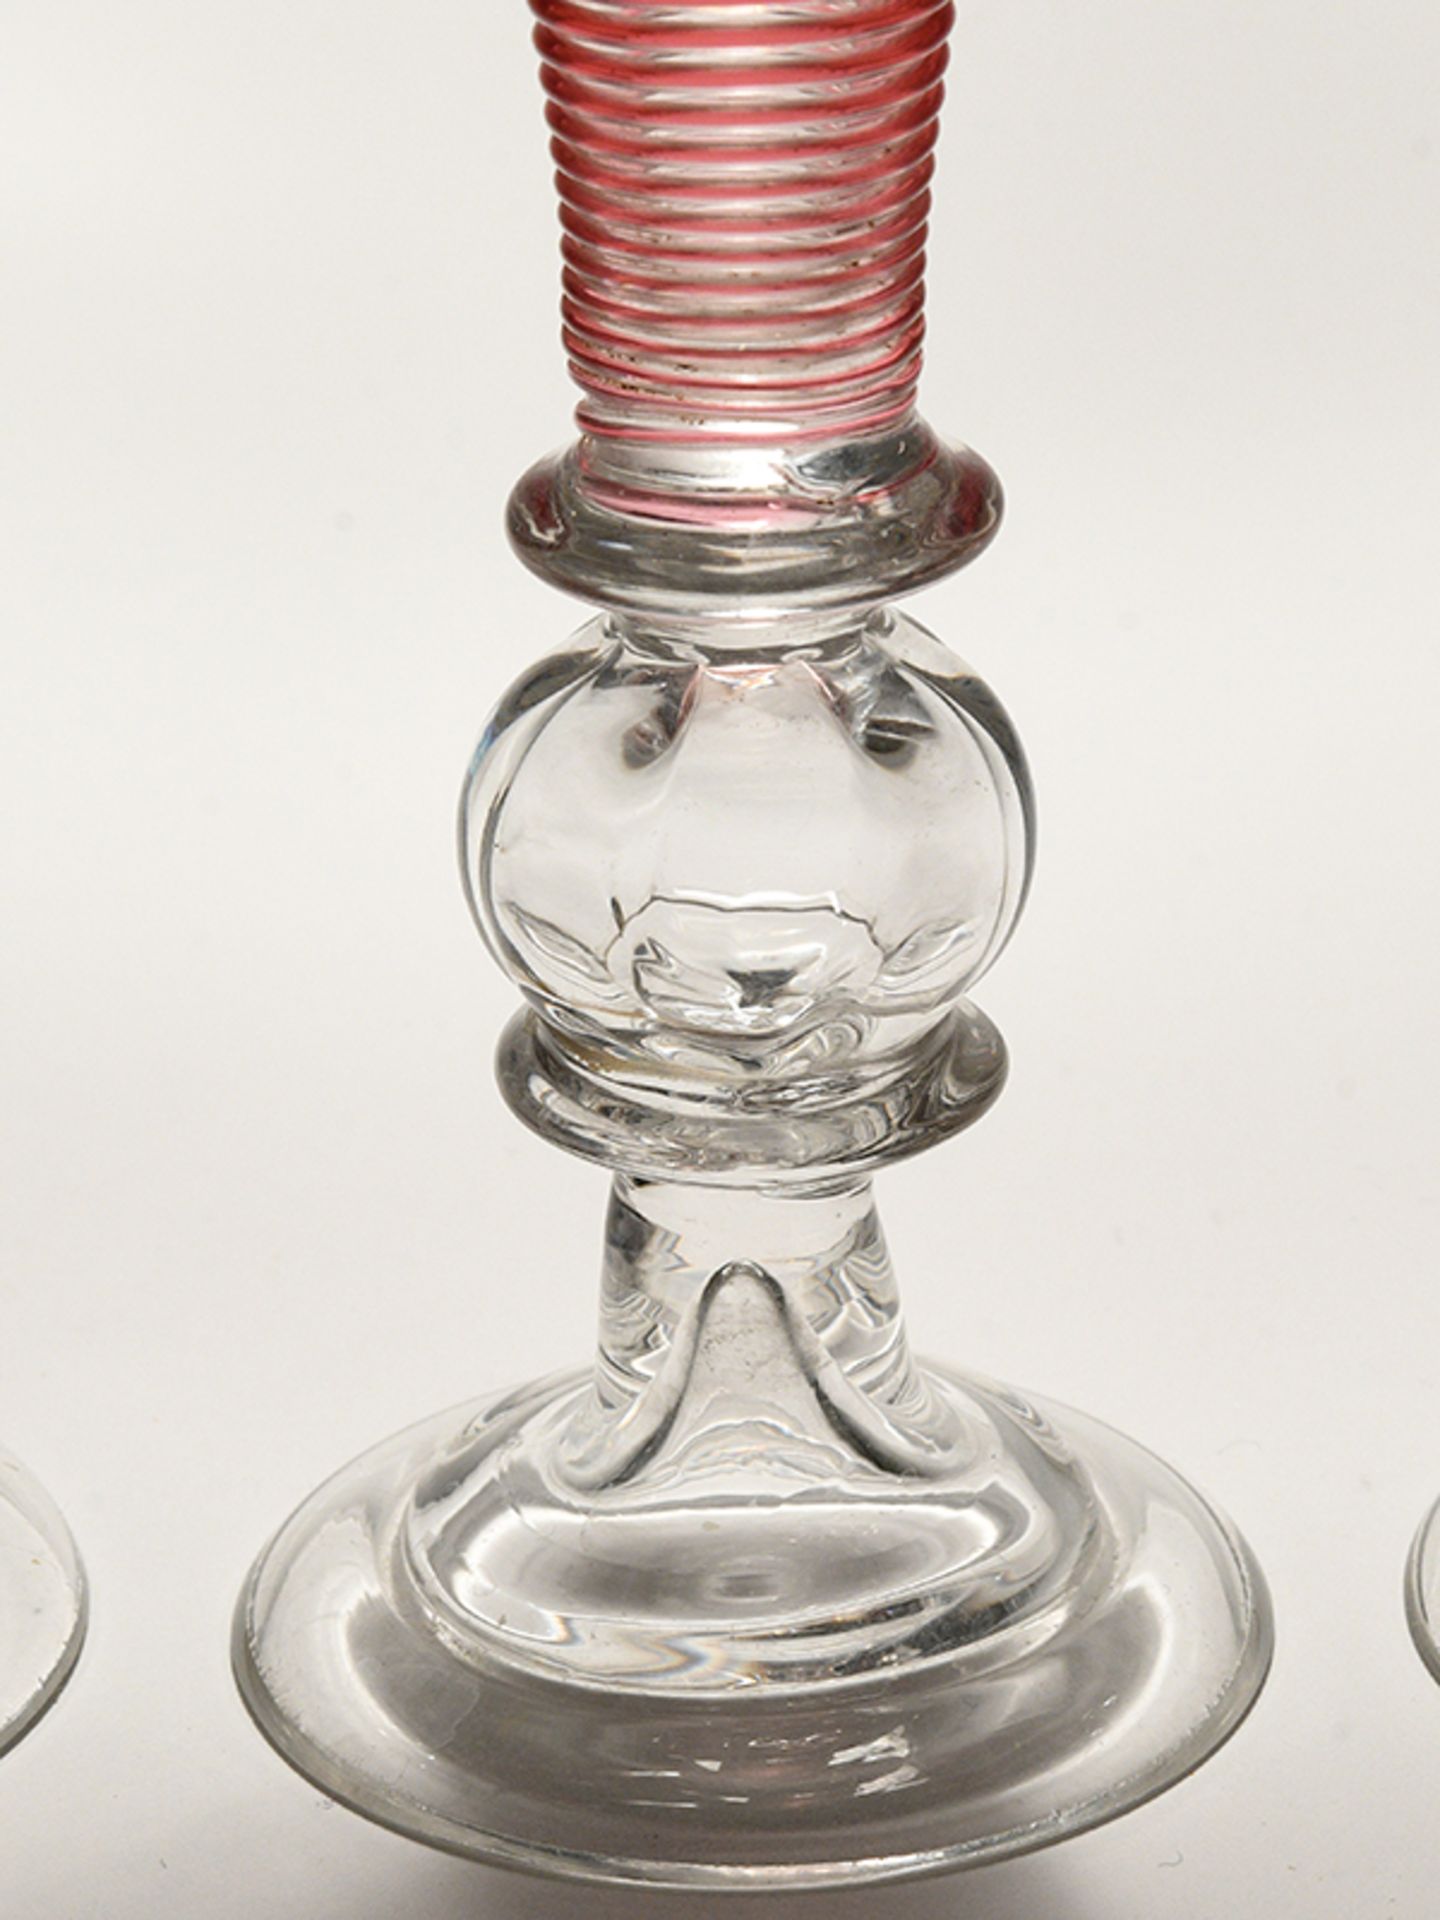 4 Sektflöten in Empireform, 19. Jh. Farbloses Glas mit roten Spiralfadenaufschmelzungen; schla - Bild 3 aus 5